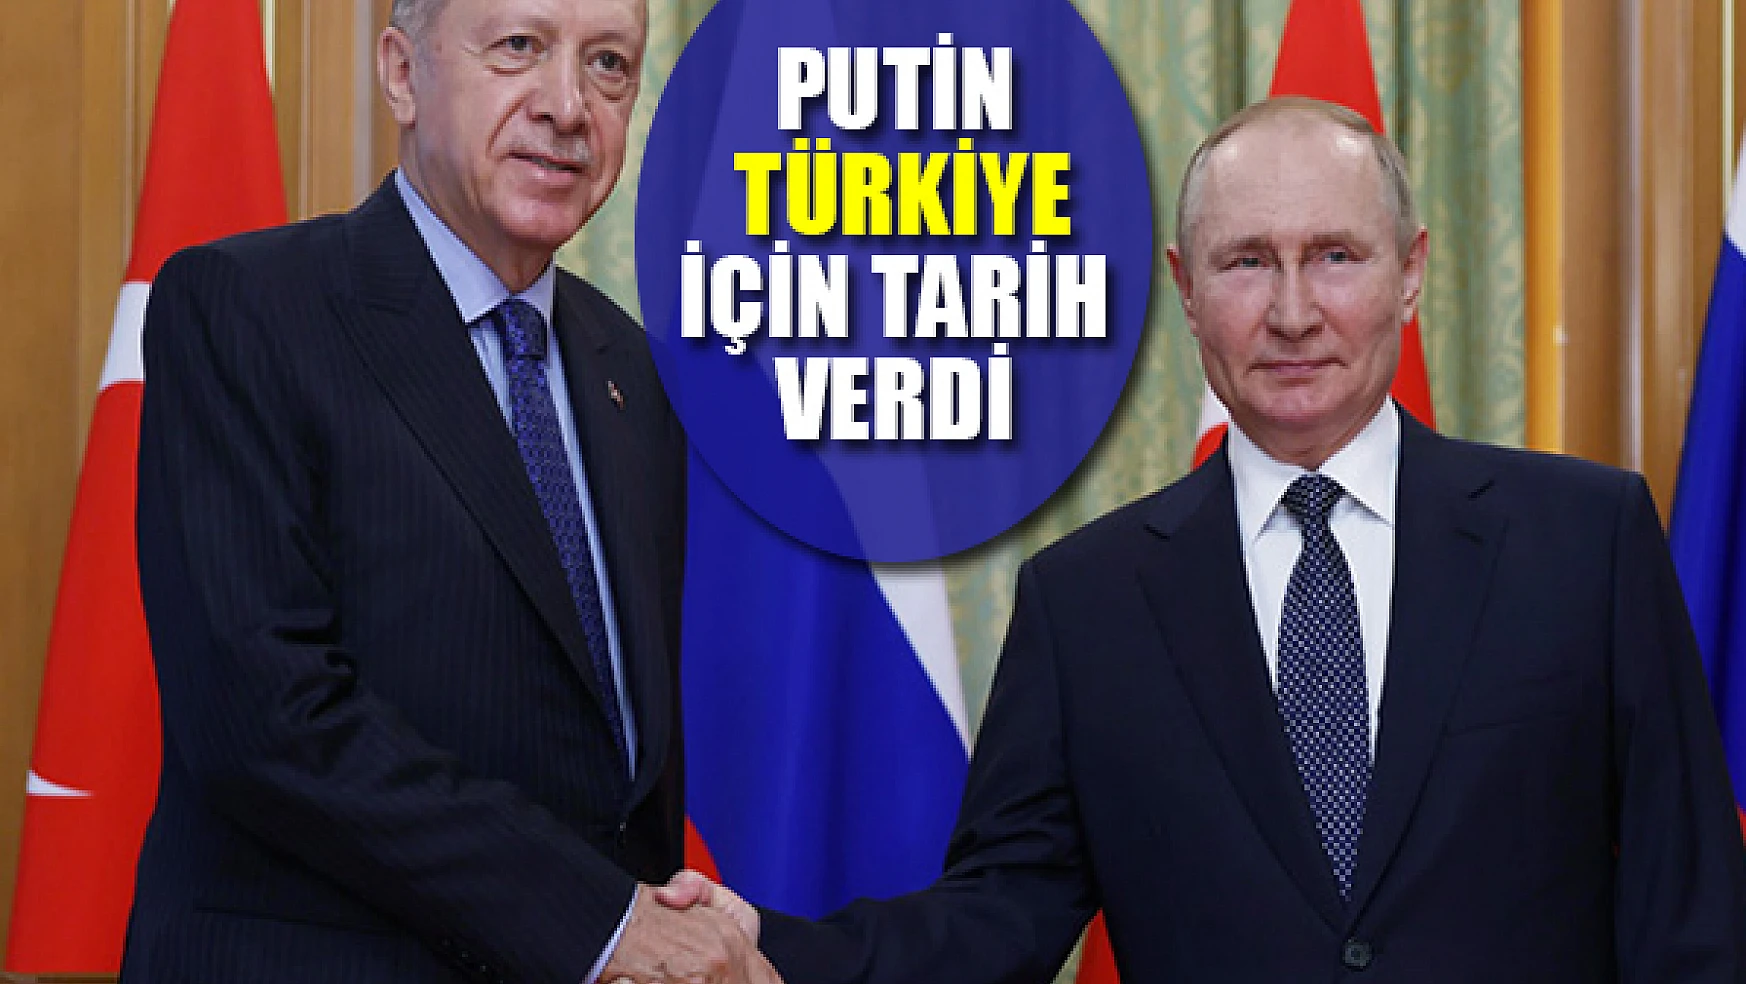 Putin Türkiye için tarih verdi